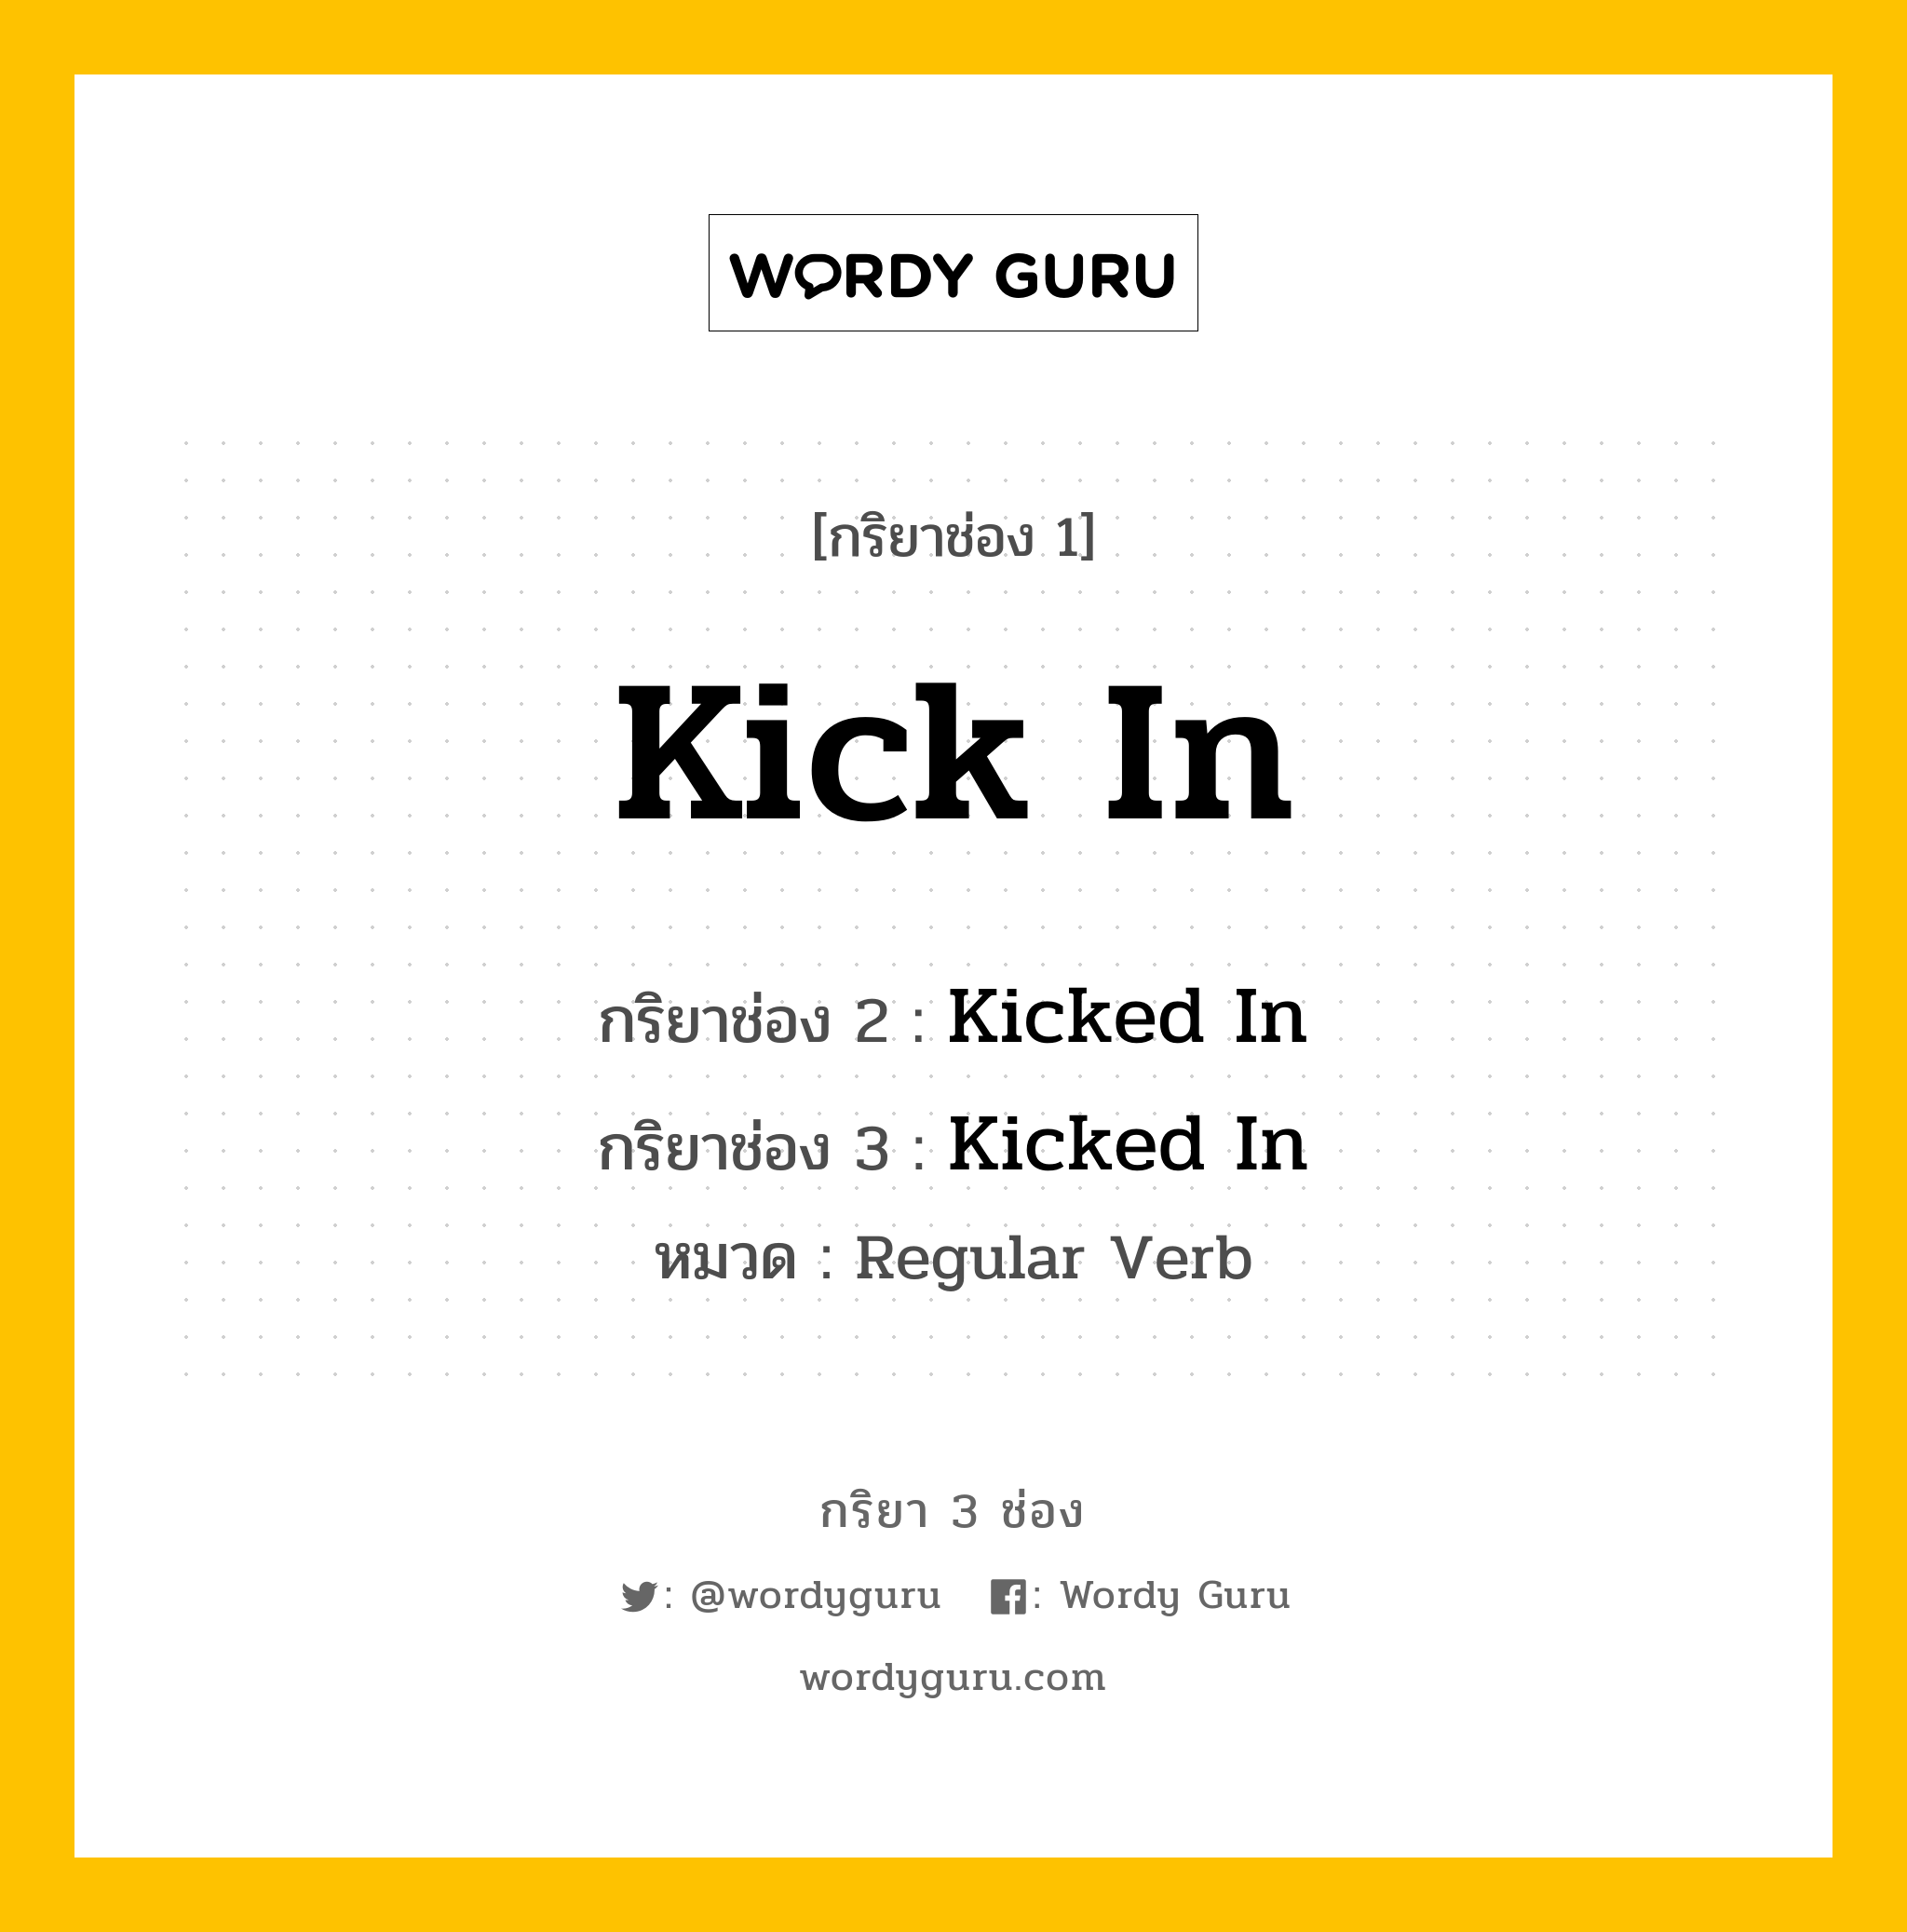 กริยา 3 ช่อง: Kick In ช่อง 2 Kick In ช่อง 3 คืออะไร, กริยาช่อง 1 Kick In กริยาช่อง 2 Kicked In กริยาช่อง 3 Kicked In หมวด Regular Verb หมวด Regular Verb